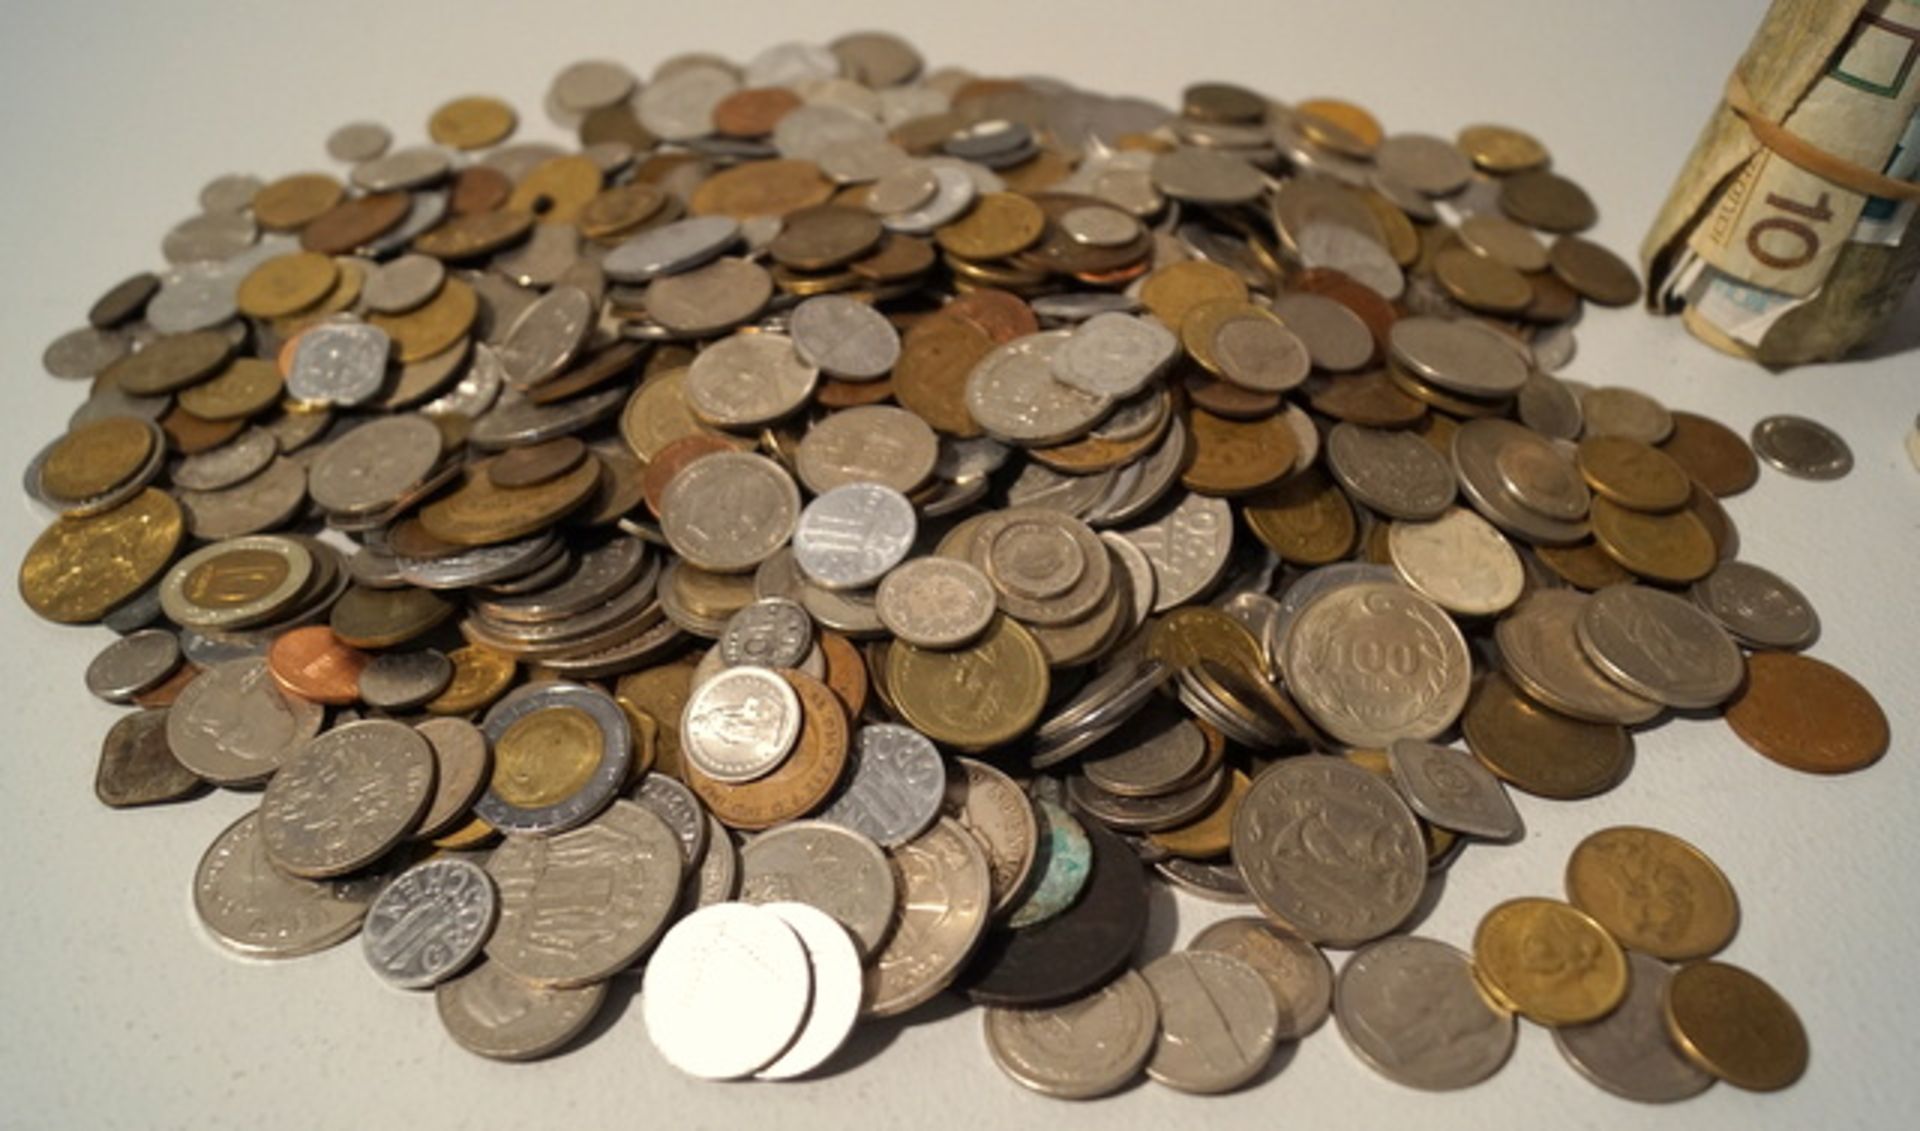 Sammlung historische Weltmünzen ca. 2,5 kg Silber, Kupfer, Messing und Aluminiummünzen, meist alt, - Bild 2 aus 3